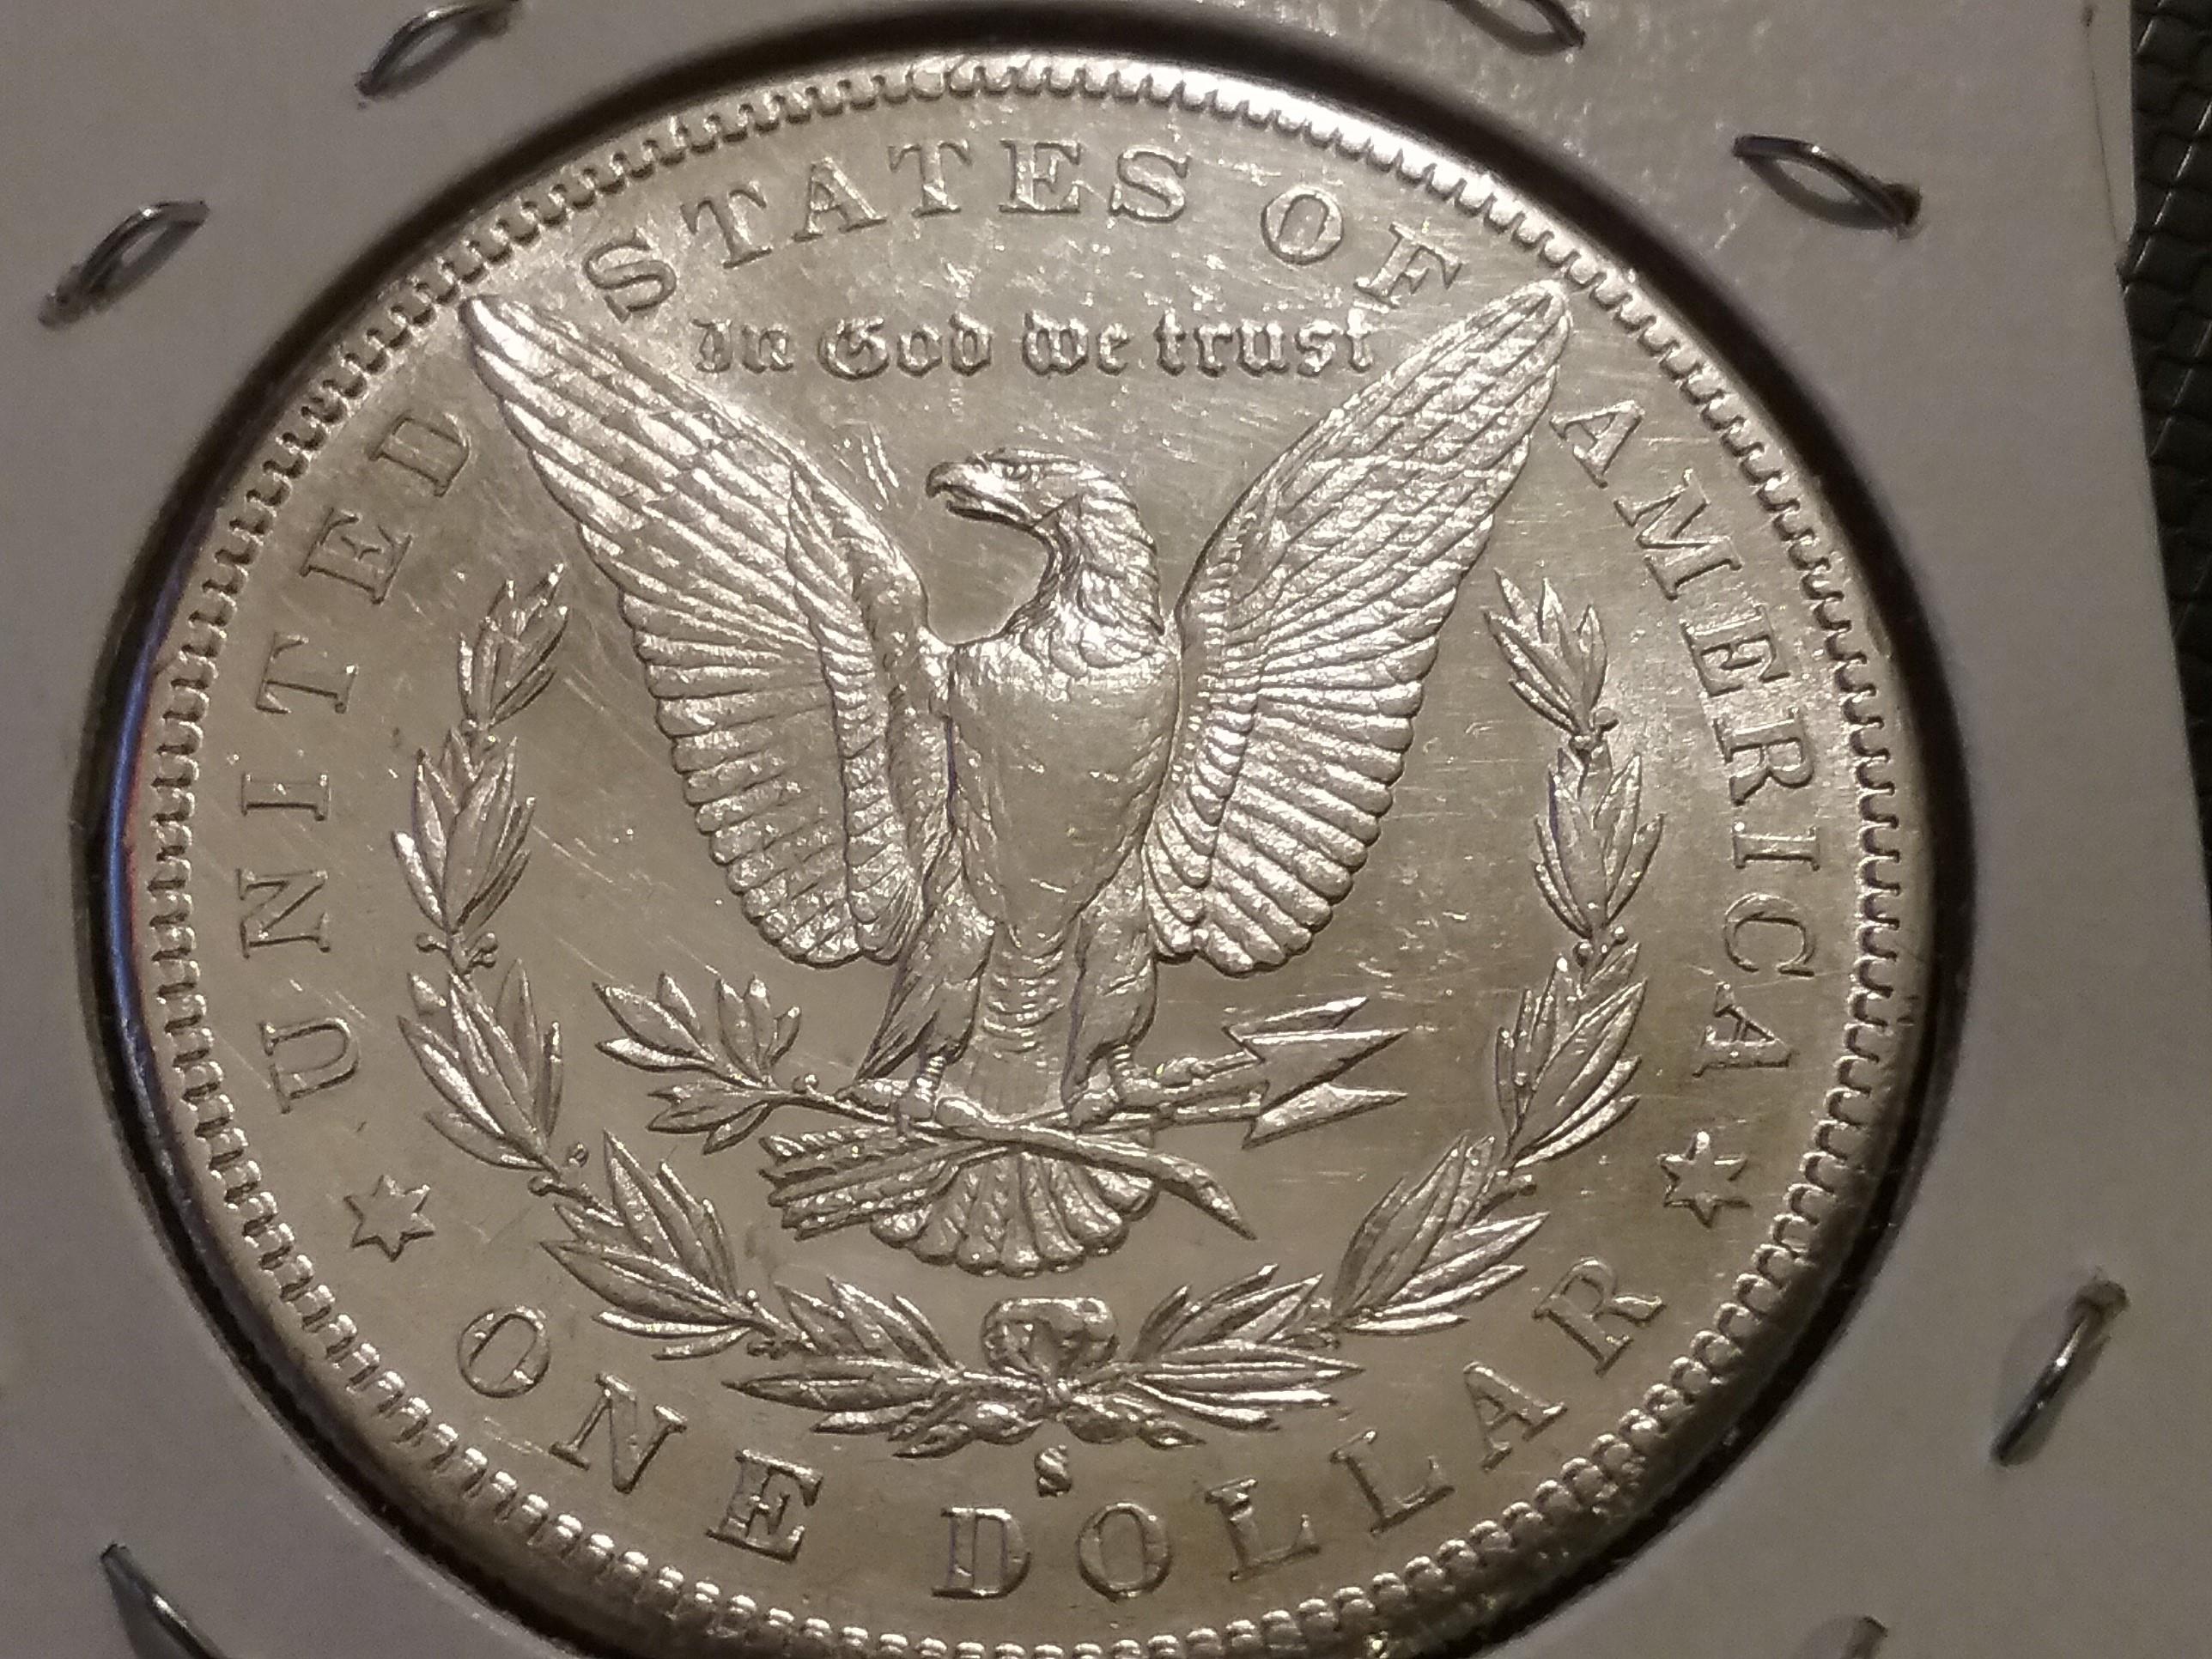 1886-S Morgan Dollar in AU-53